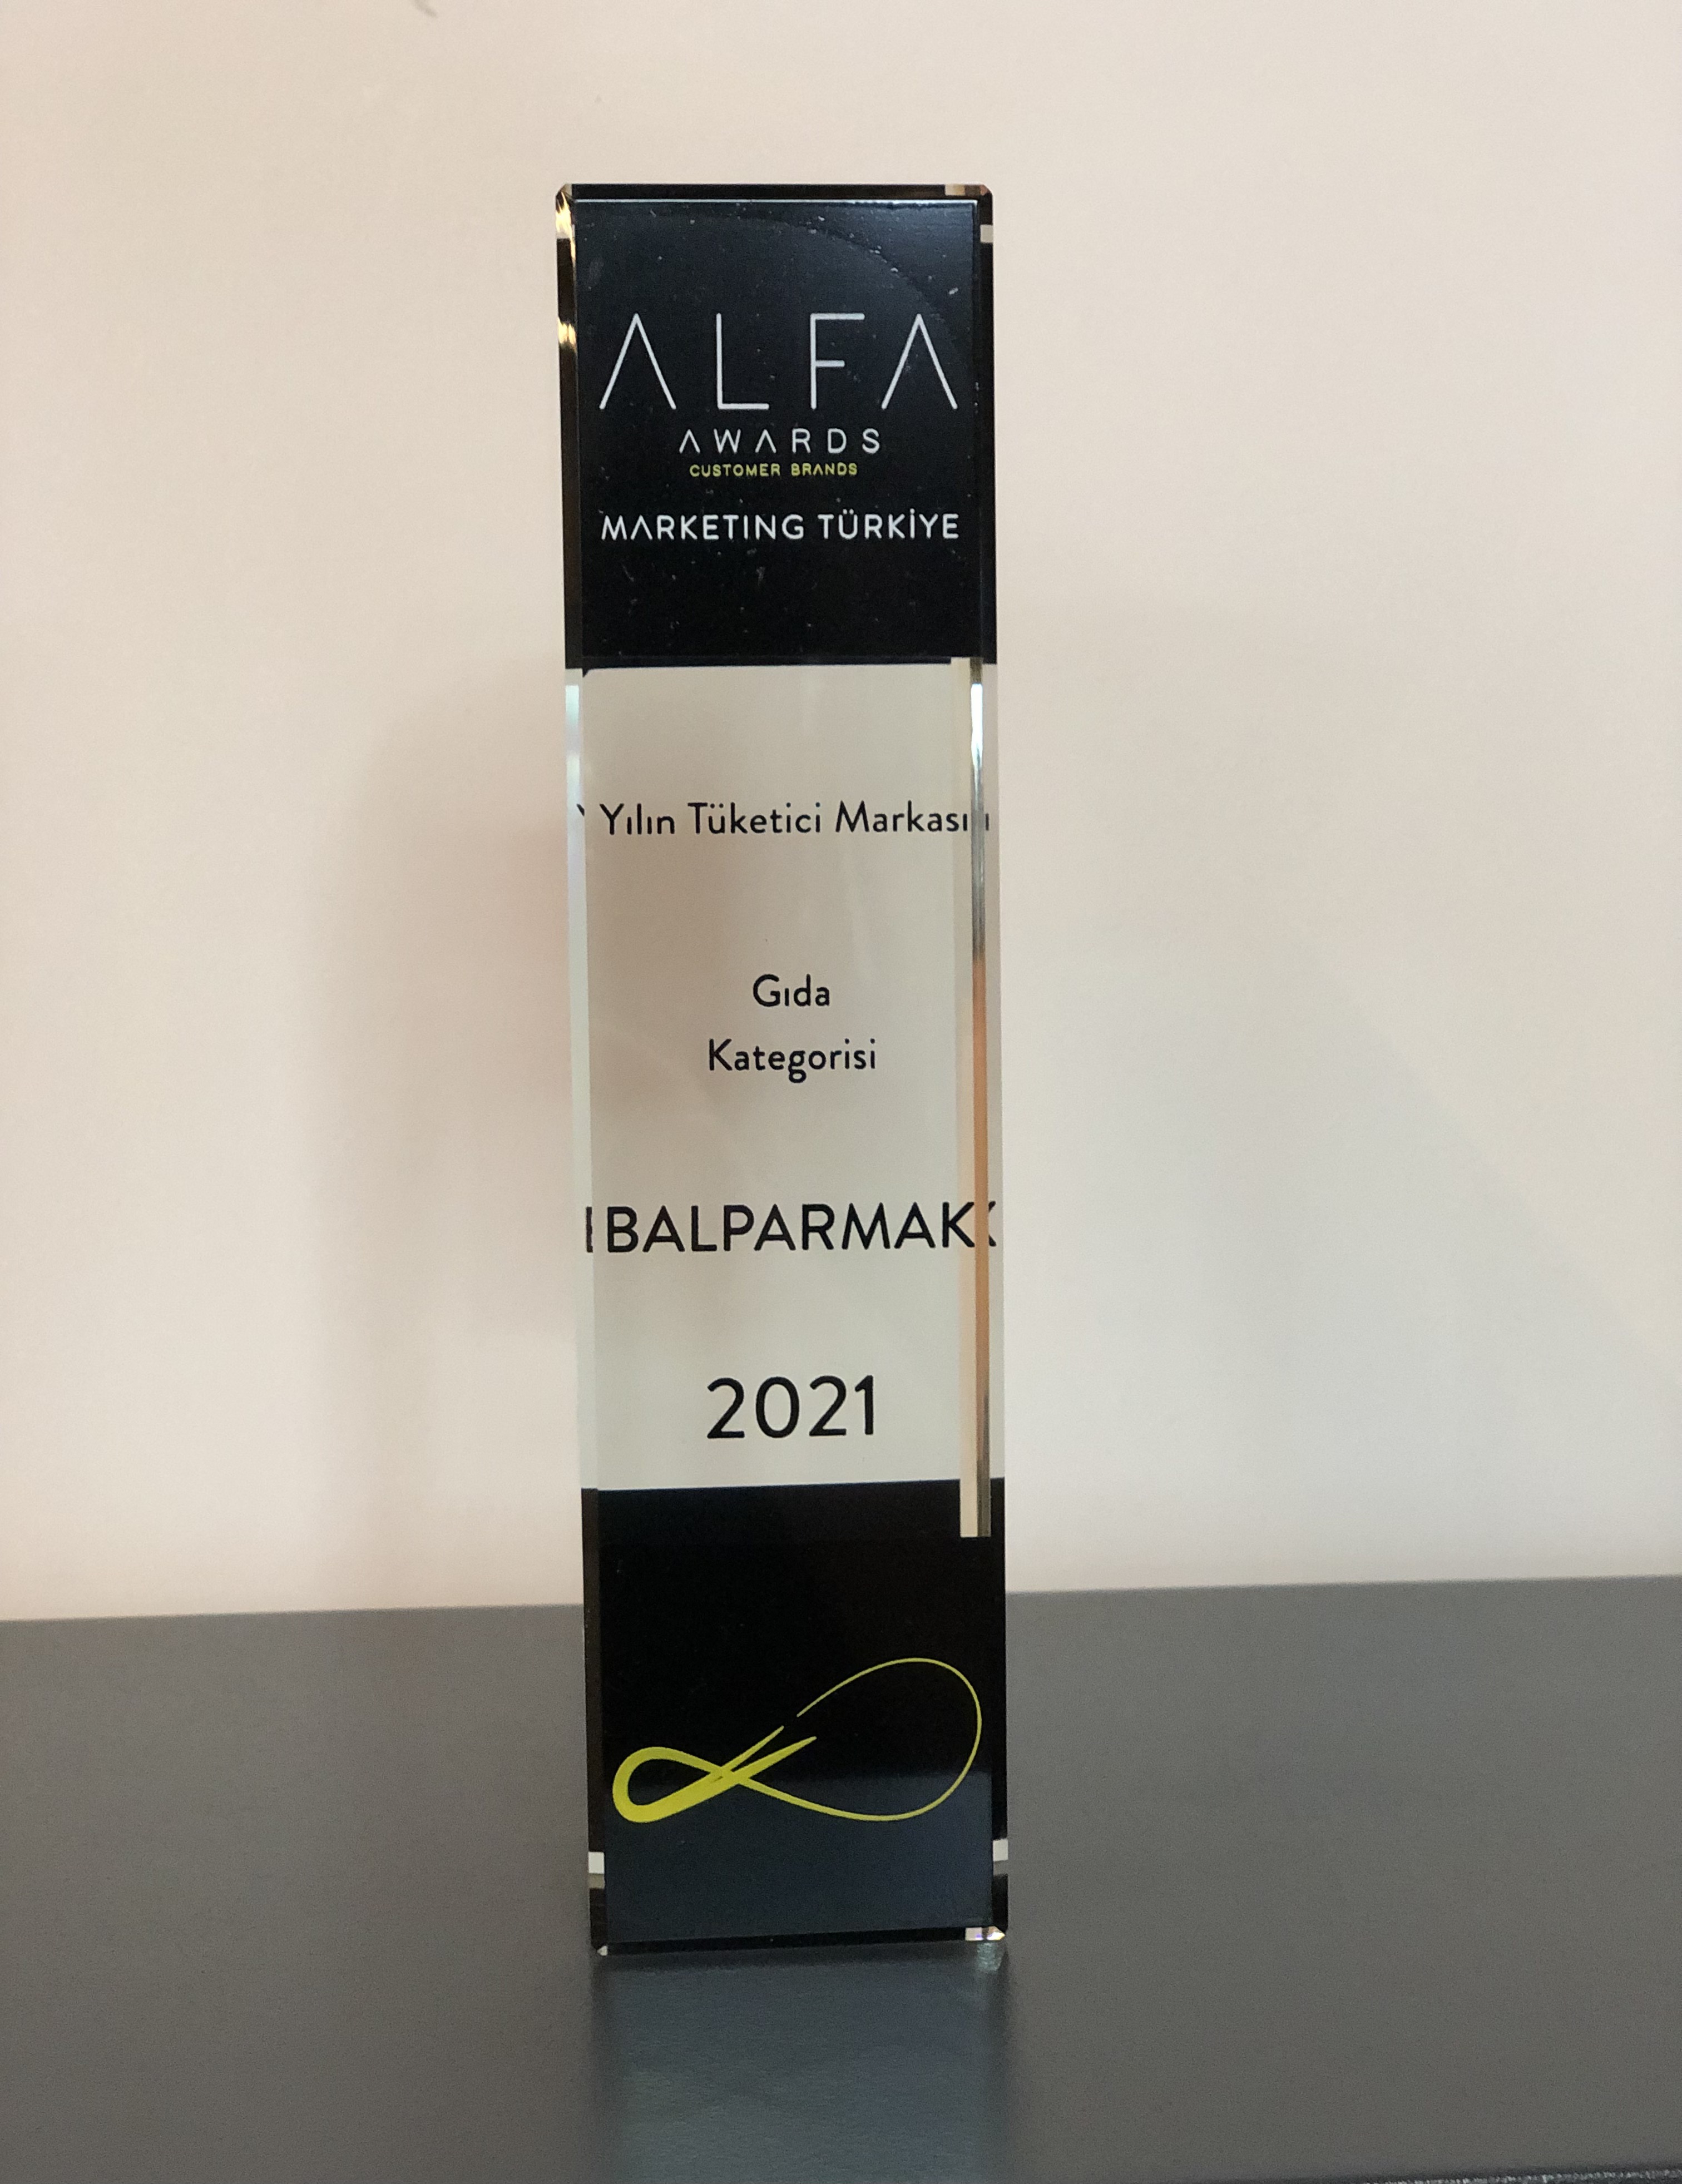 A.L.F.A. Awards “Customer Brand” Ödülleri